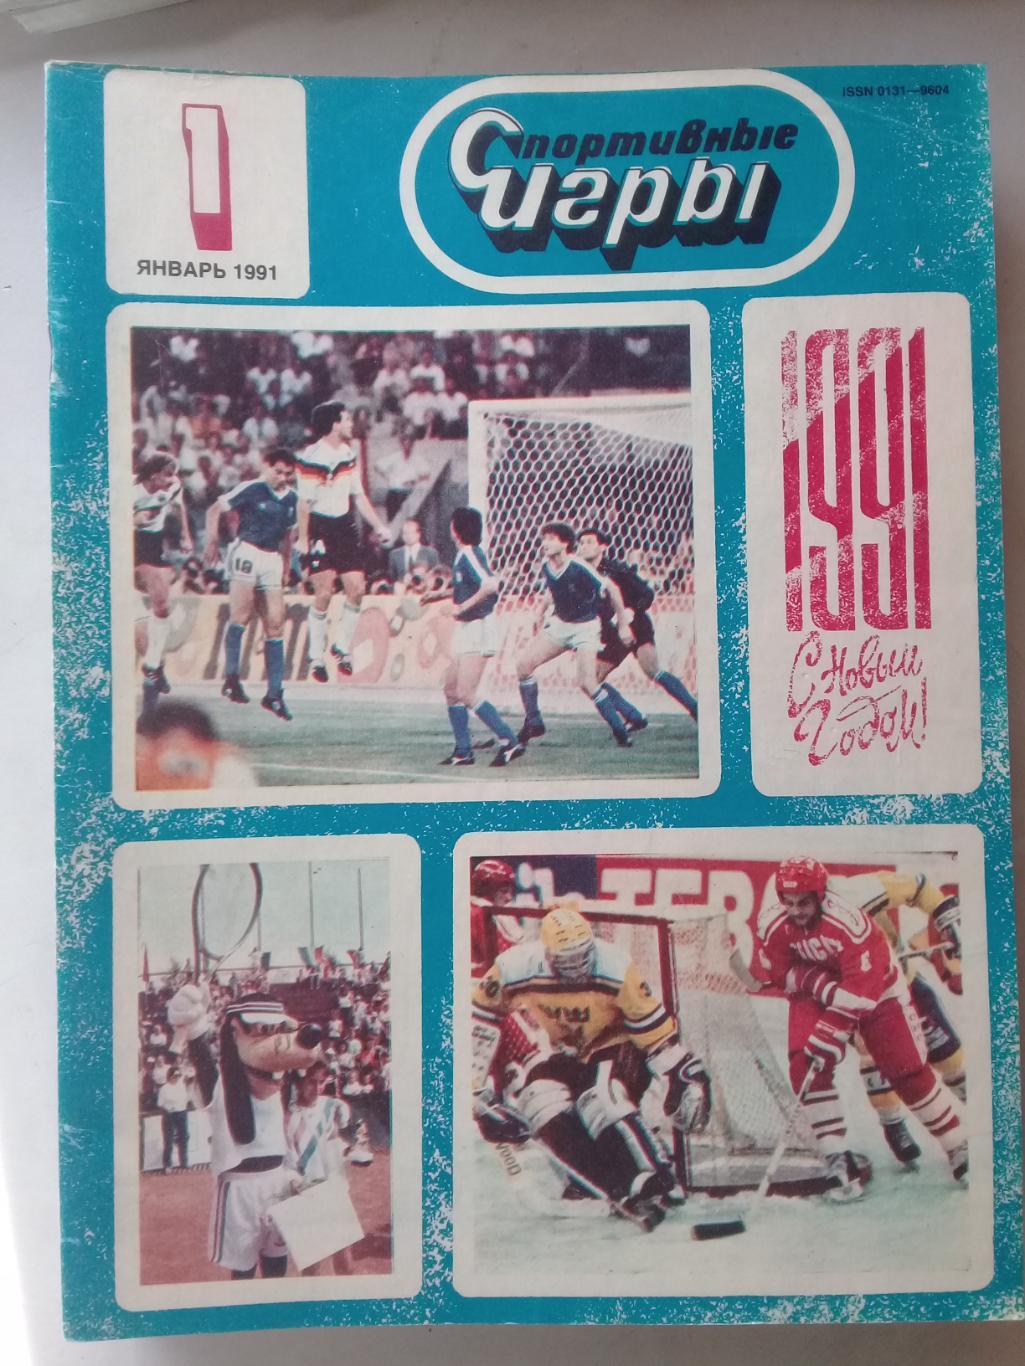 (Только для dk7586) Журнал Спортивные игры 1991 год. Годовой комплект.